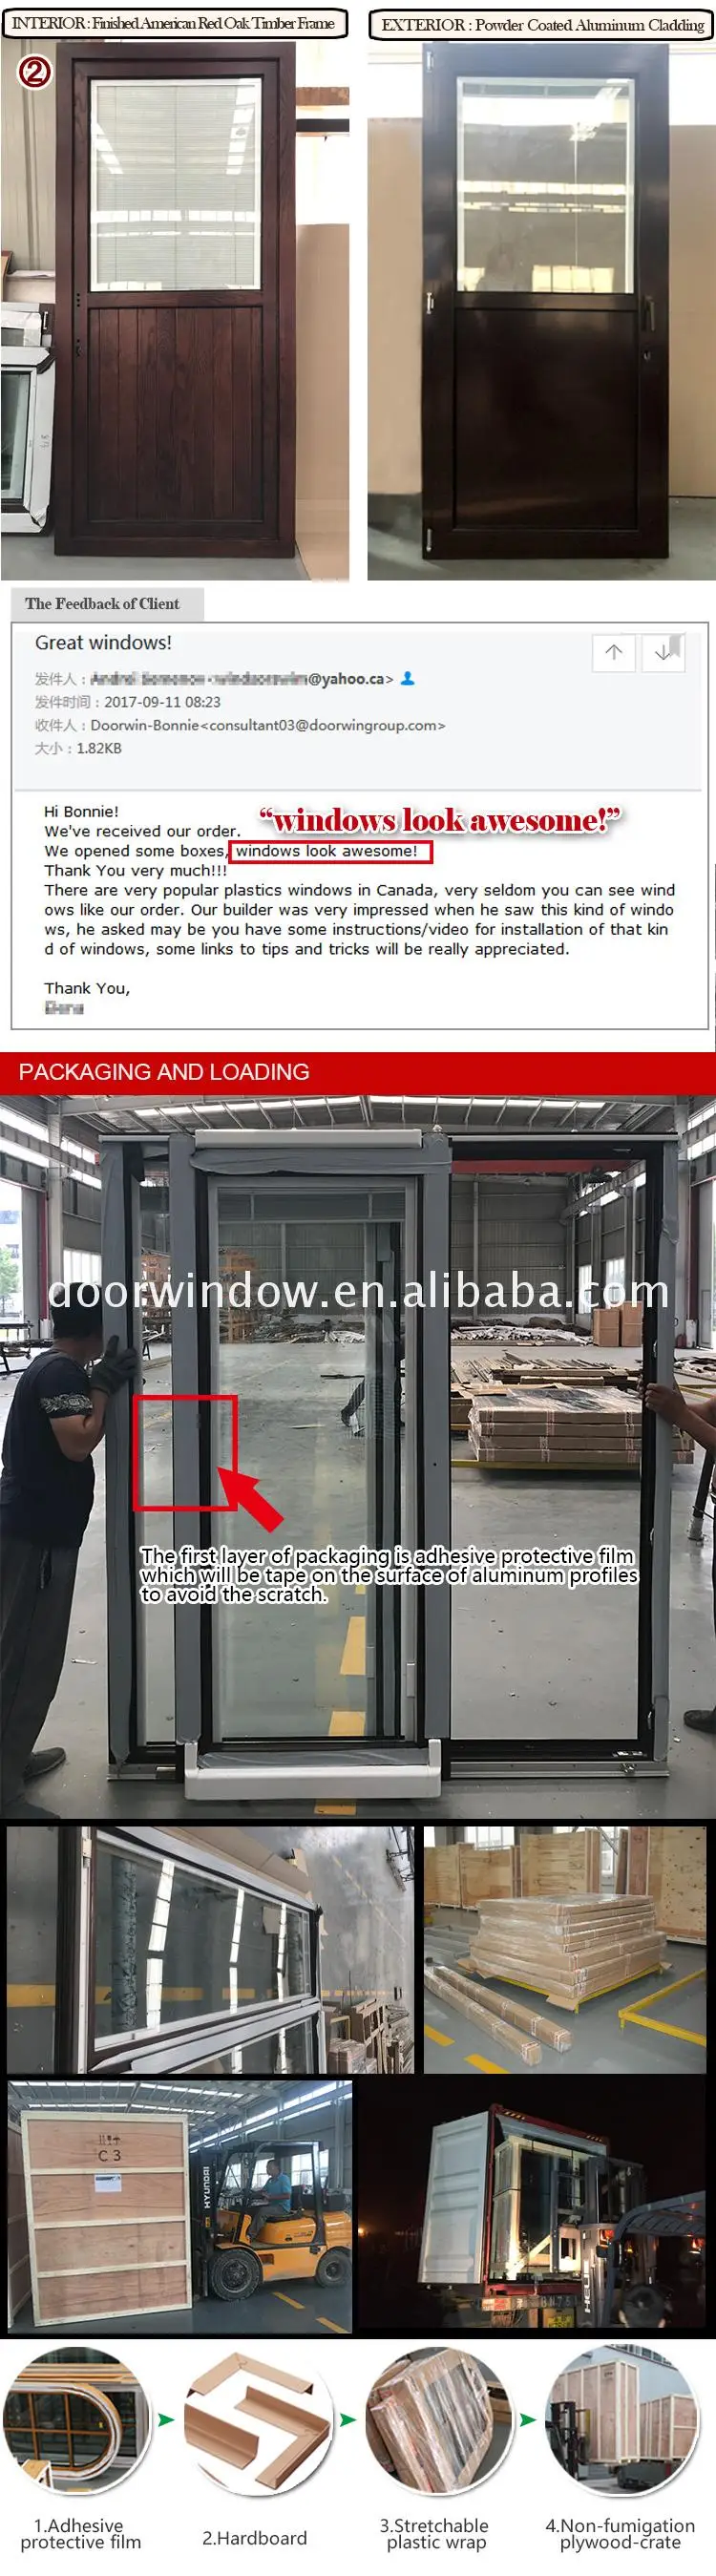 Factory price wholesale window and sliding door treatments wide patio doors